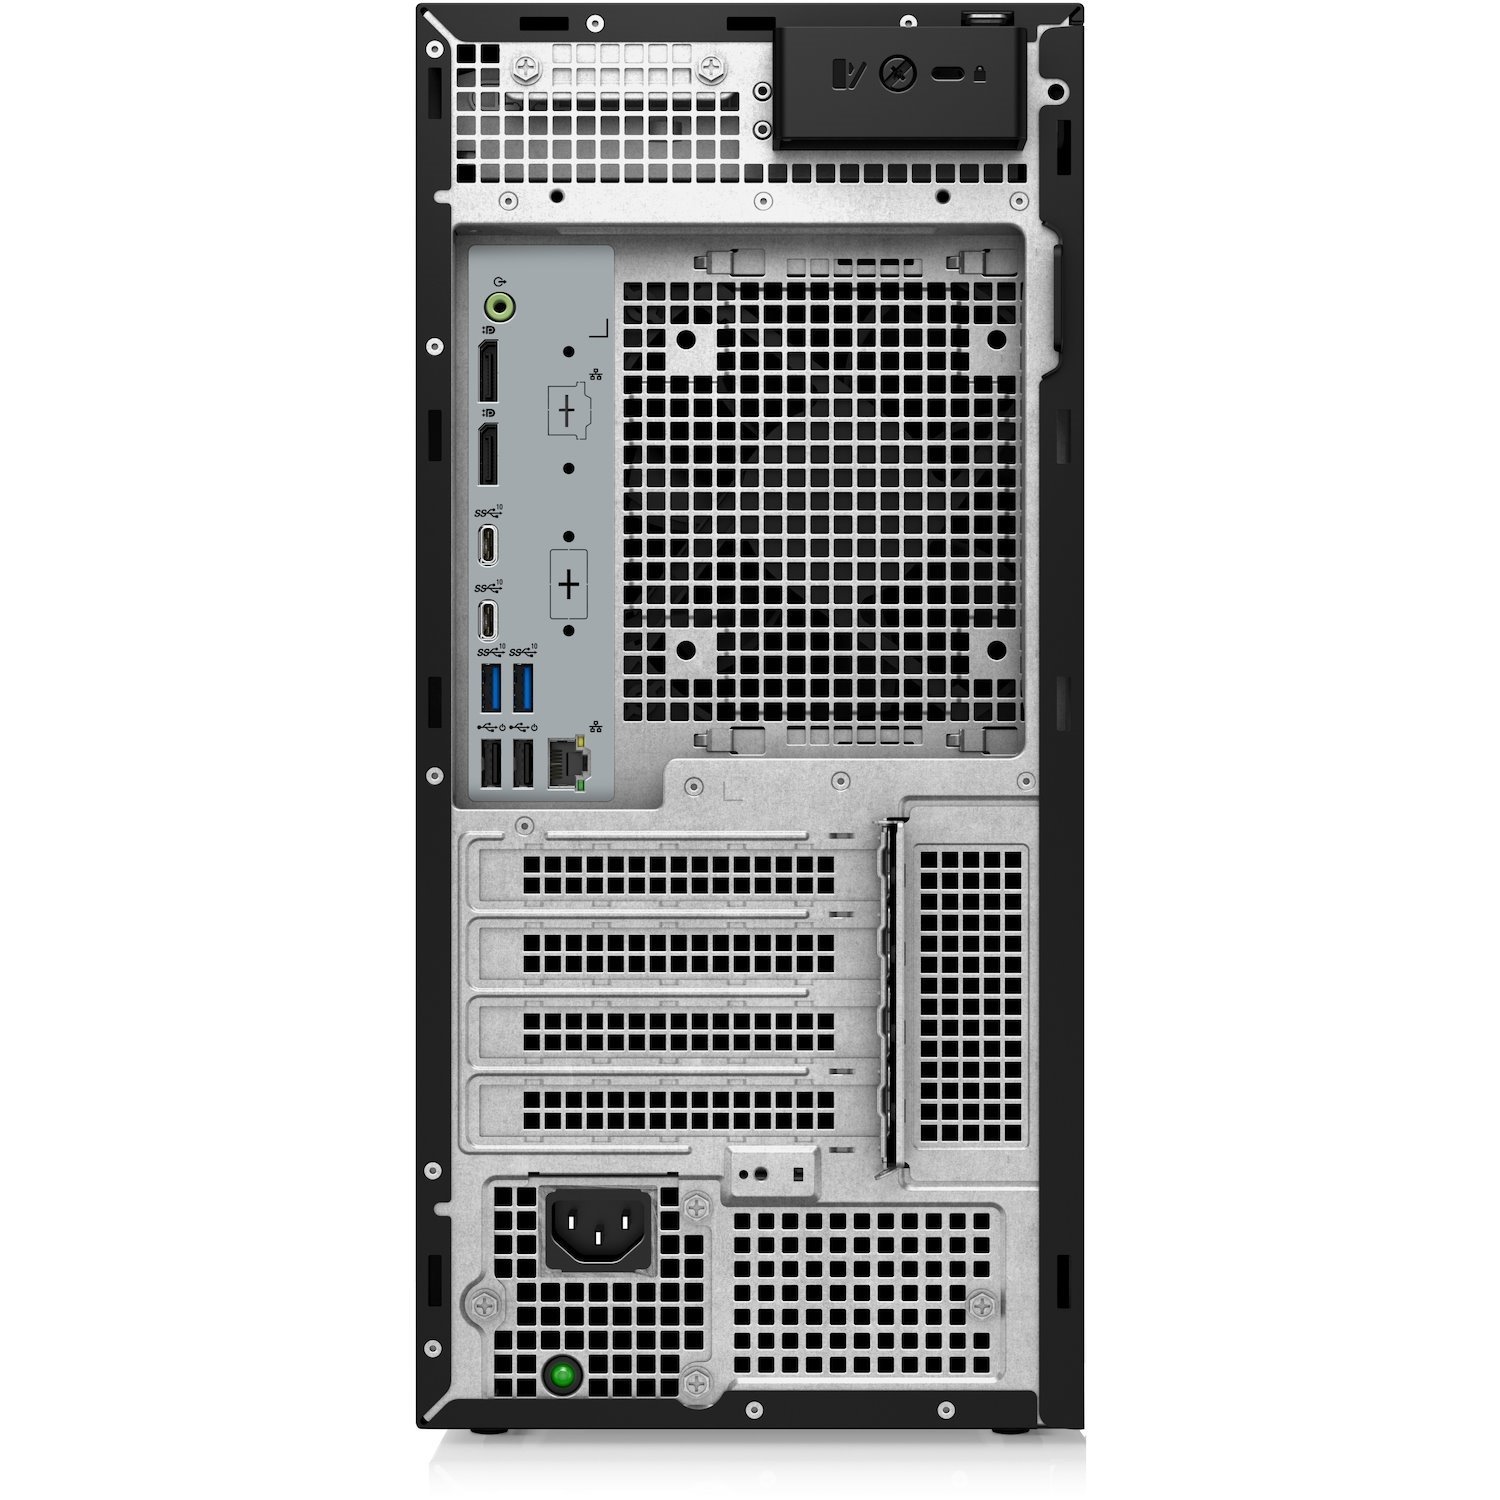 Dell Precision 3000 3660 Workstation - Intel Core i9 13th Gen i9-13900K - 32 GB - 1 TB SSD - Tower